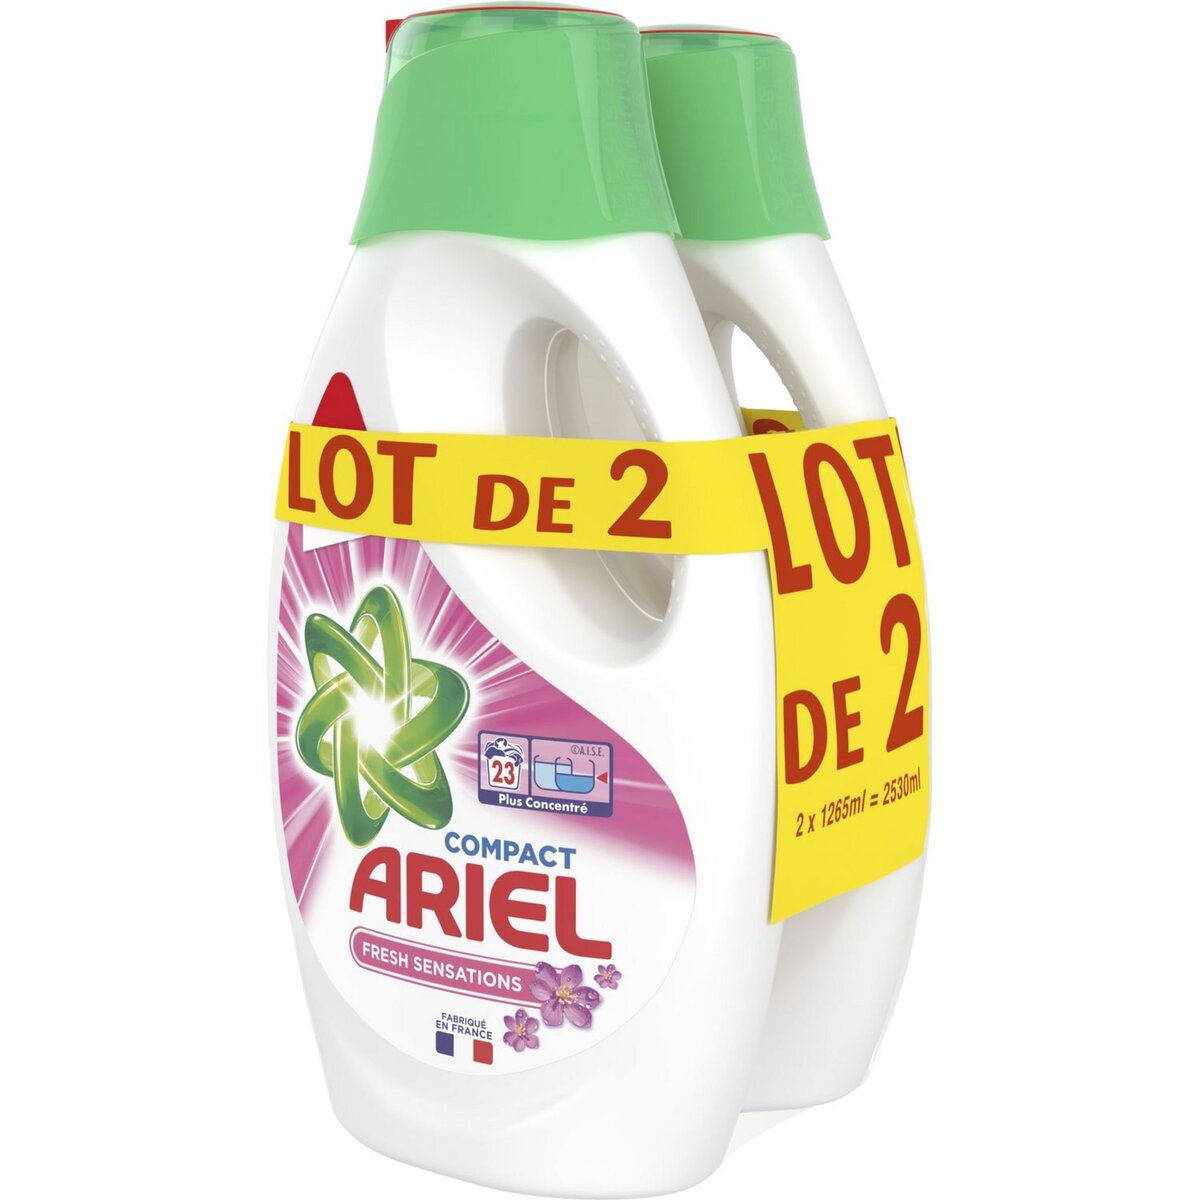 ARIEL Ariel Lessive liquide fresh sensations 23 lavages 1,265l 23 lavages 1,265l